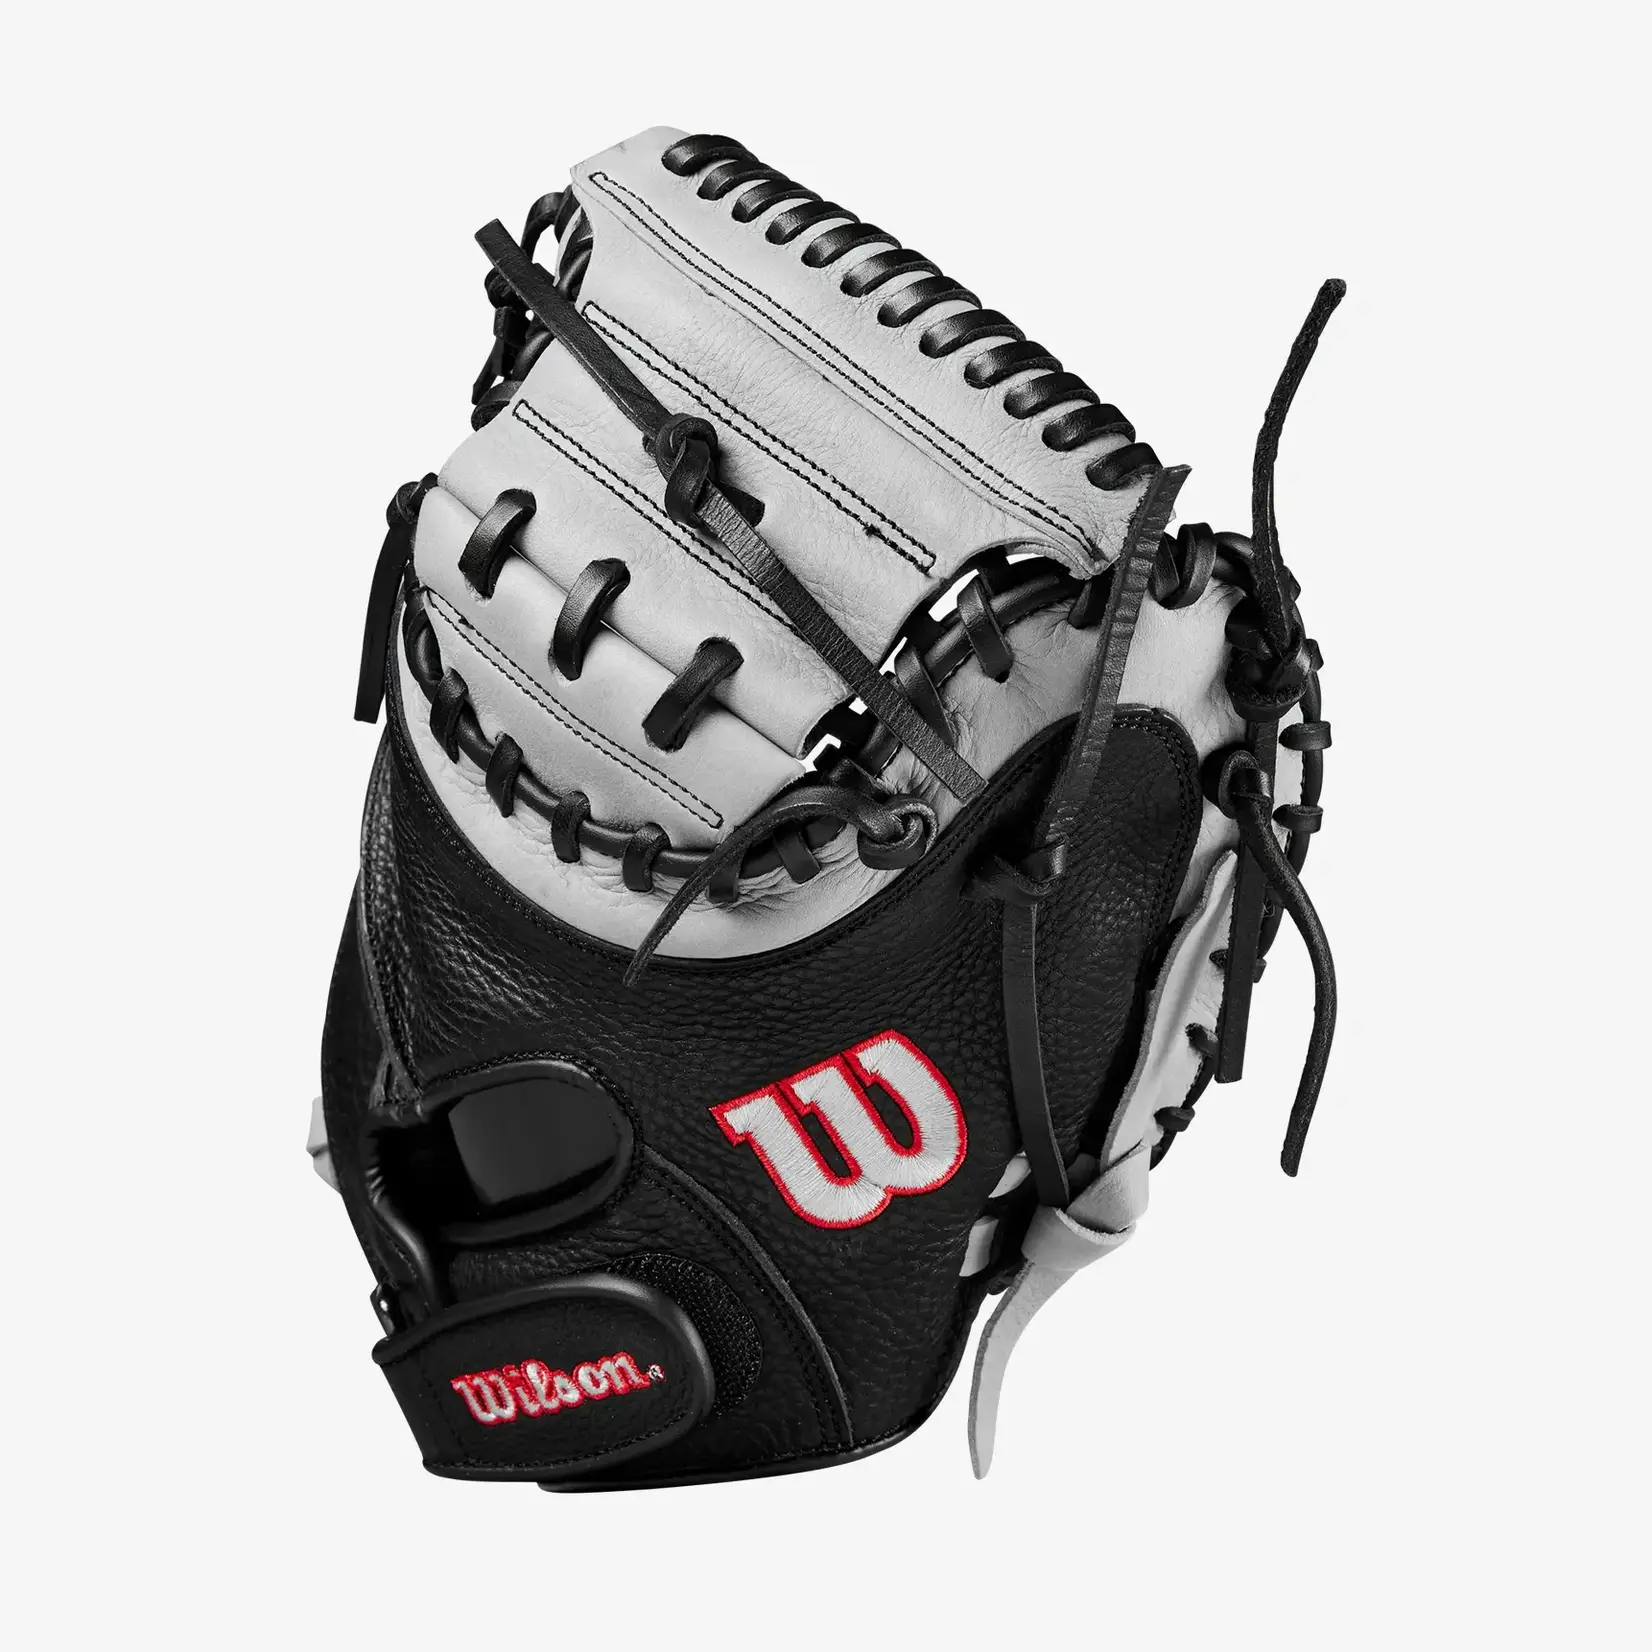 Wilson Wilson Baseball Glove, A1000 CM33, Reg, 33", Catchers Mitt, Gry/Blk/Red